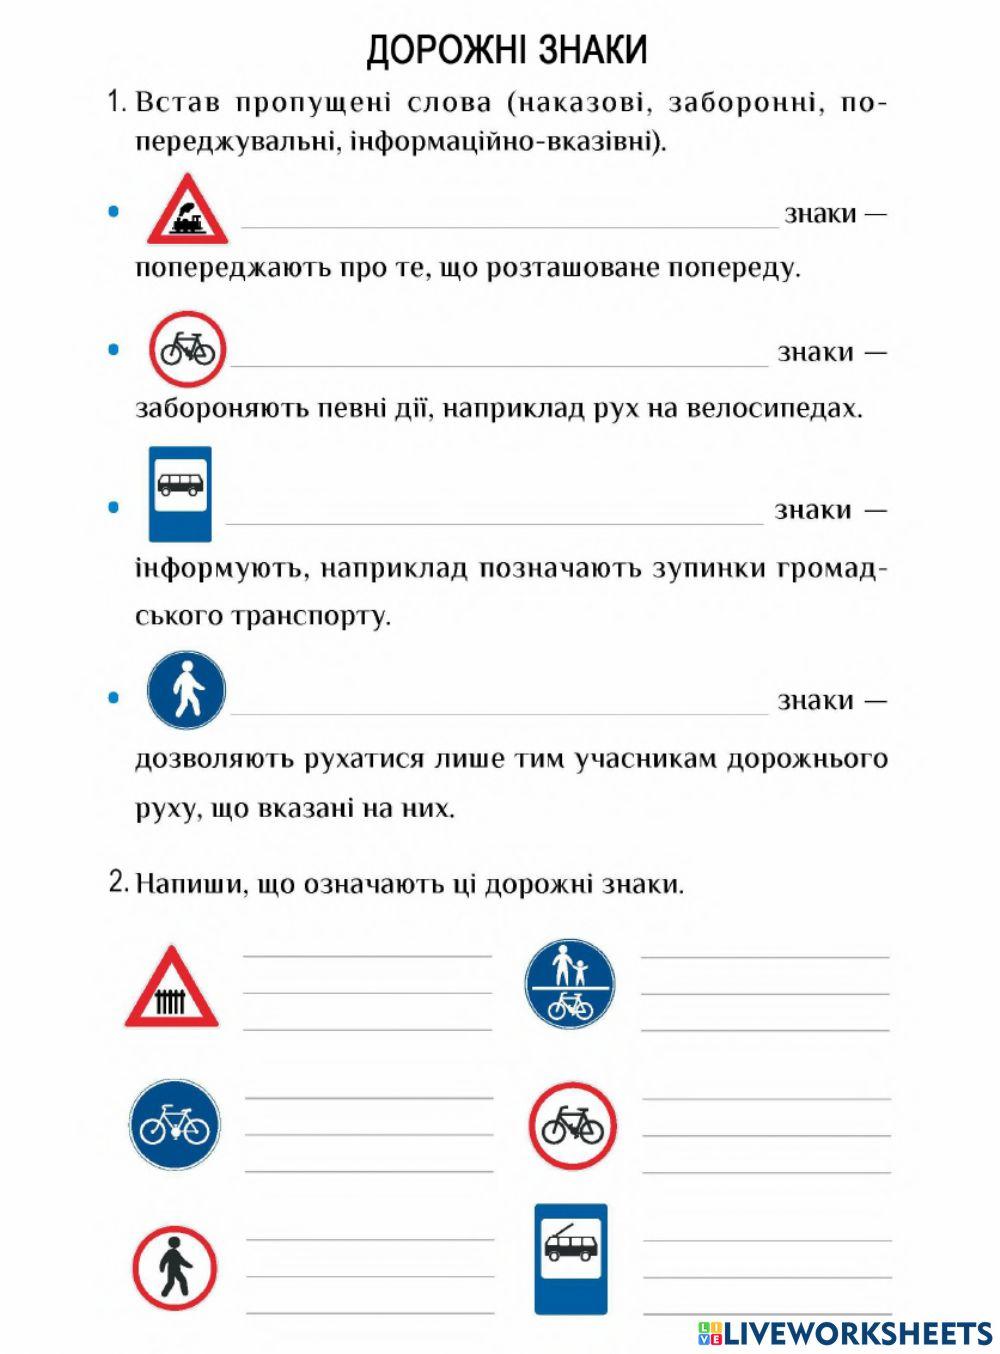 Дорожні знаки-3 кл-ЯДС-Воронцова